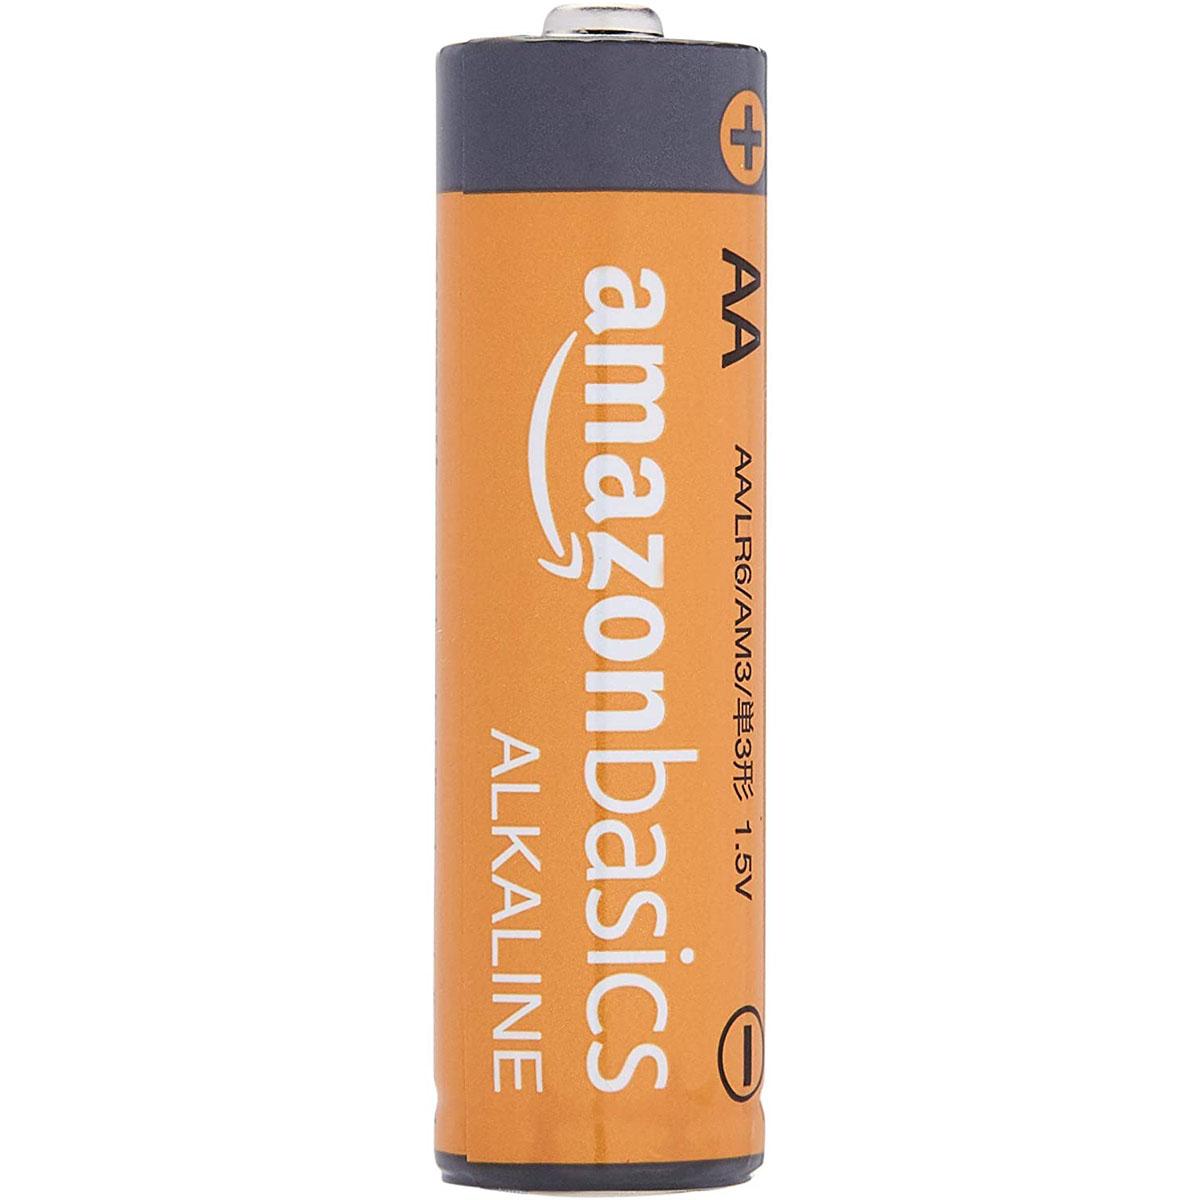 100 Amazon Basics AA Alkaline Batteries for $20.49